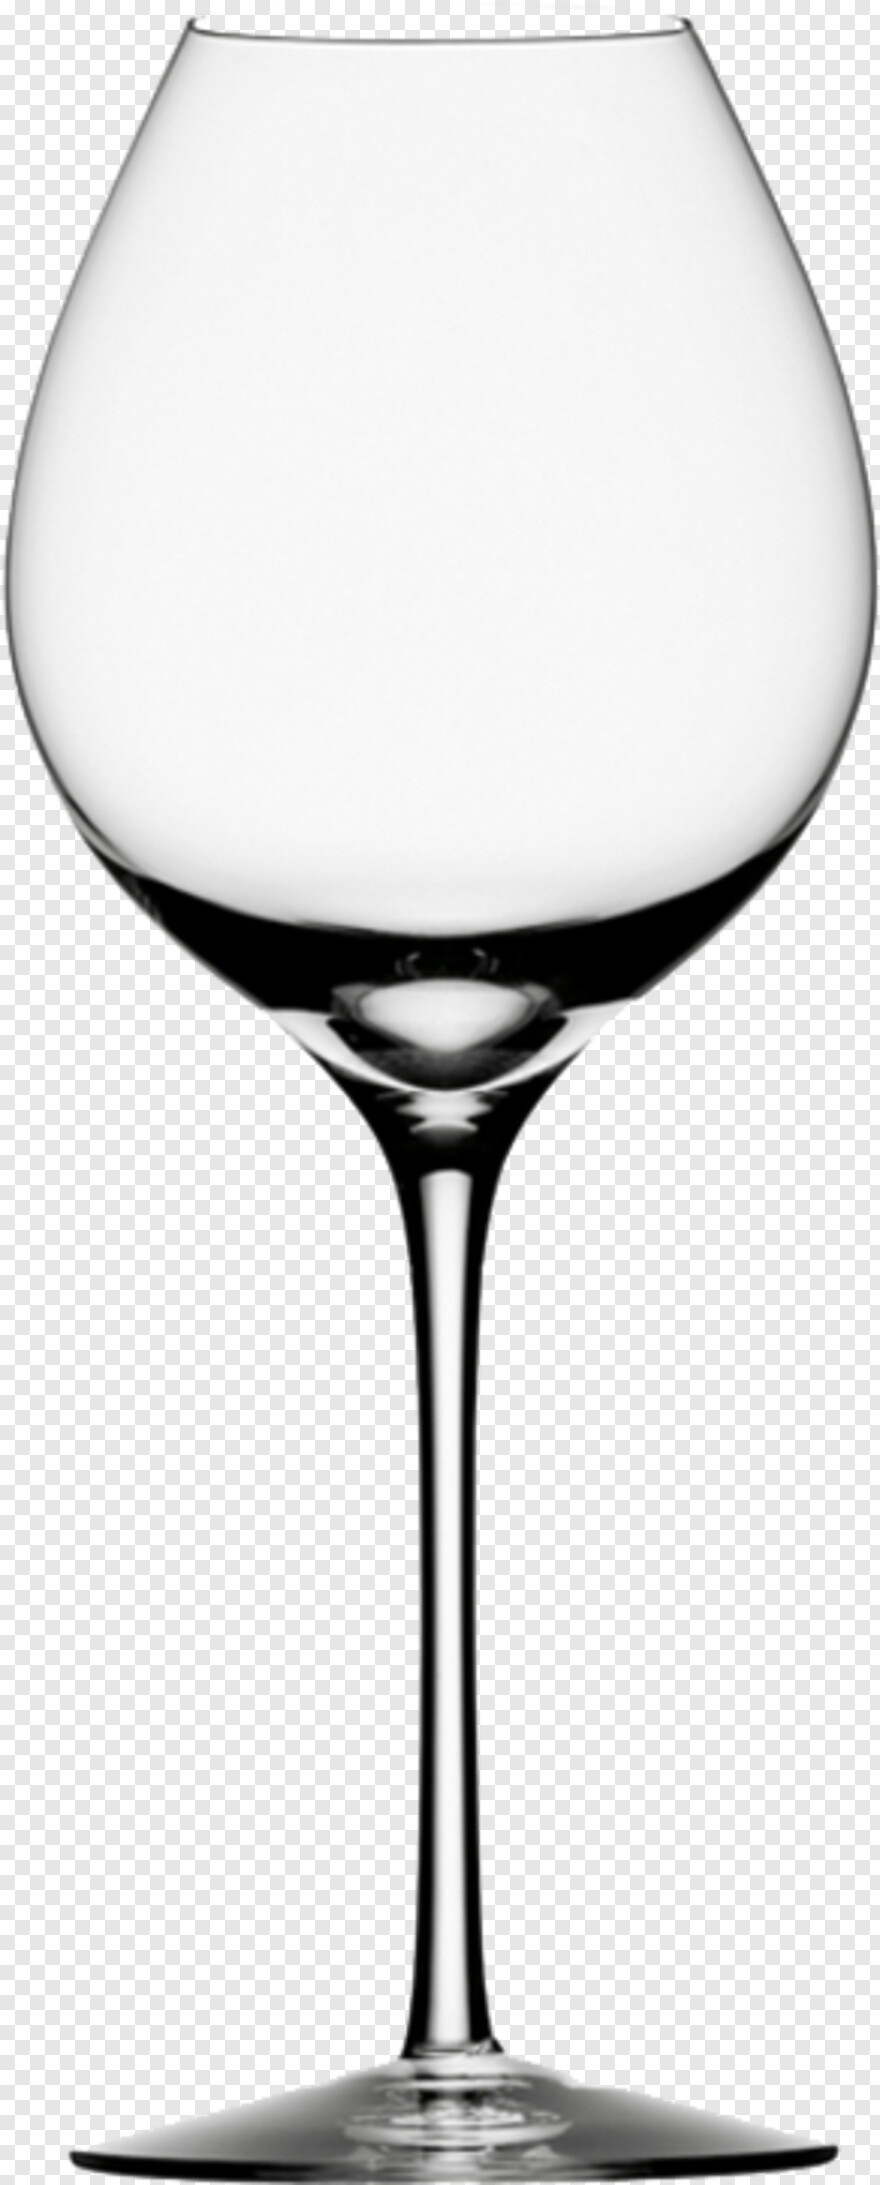 wine-glass # 795568